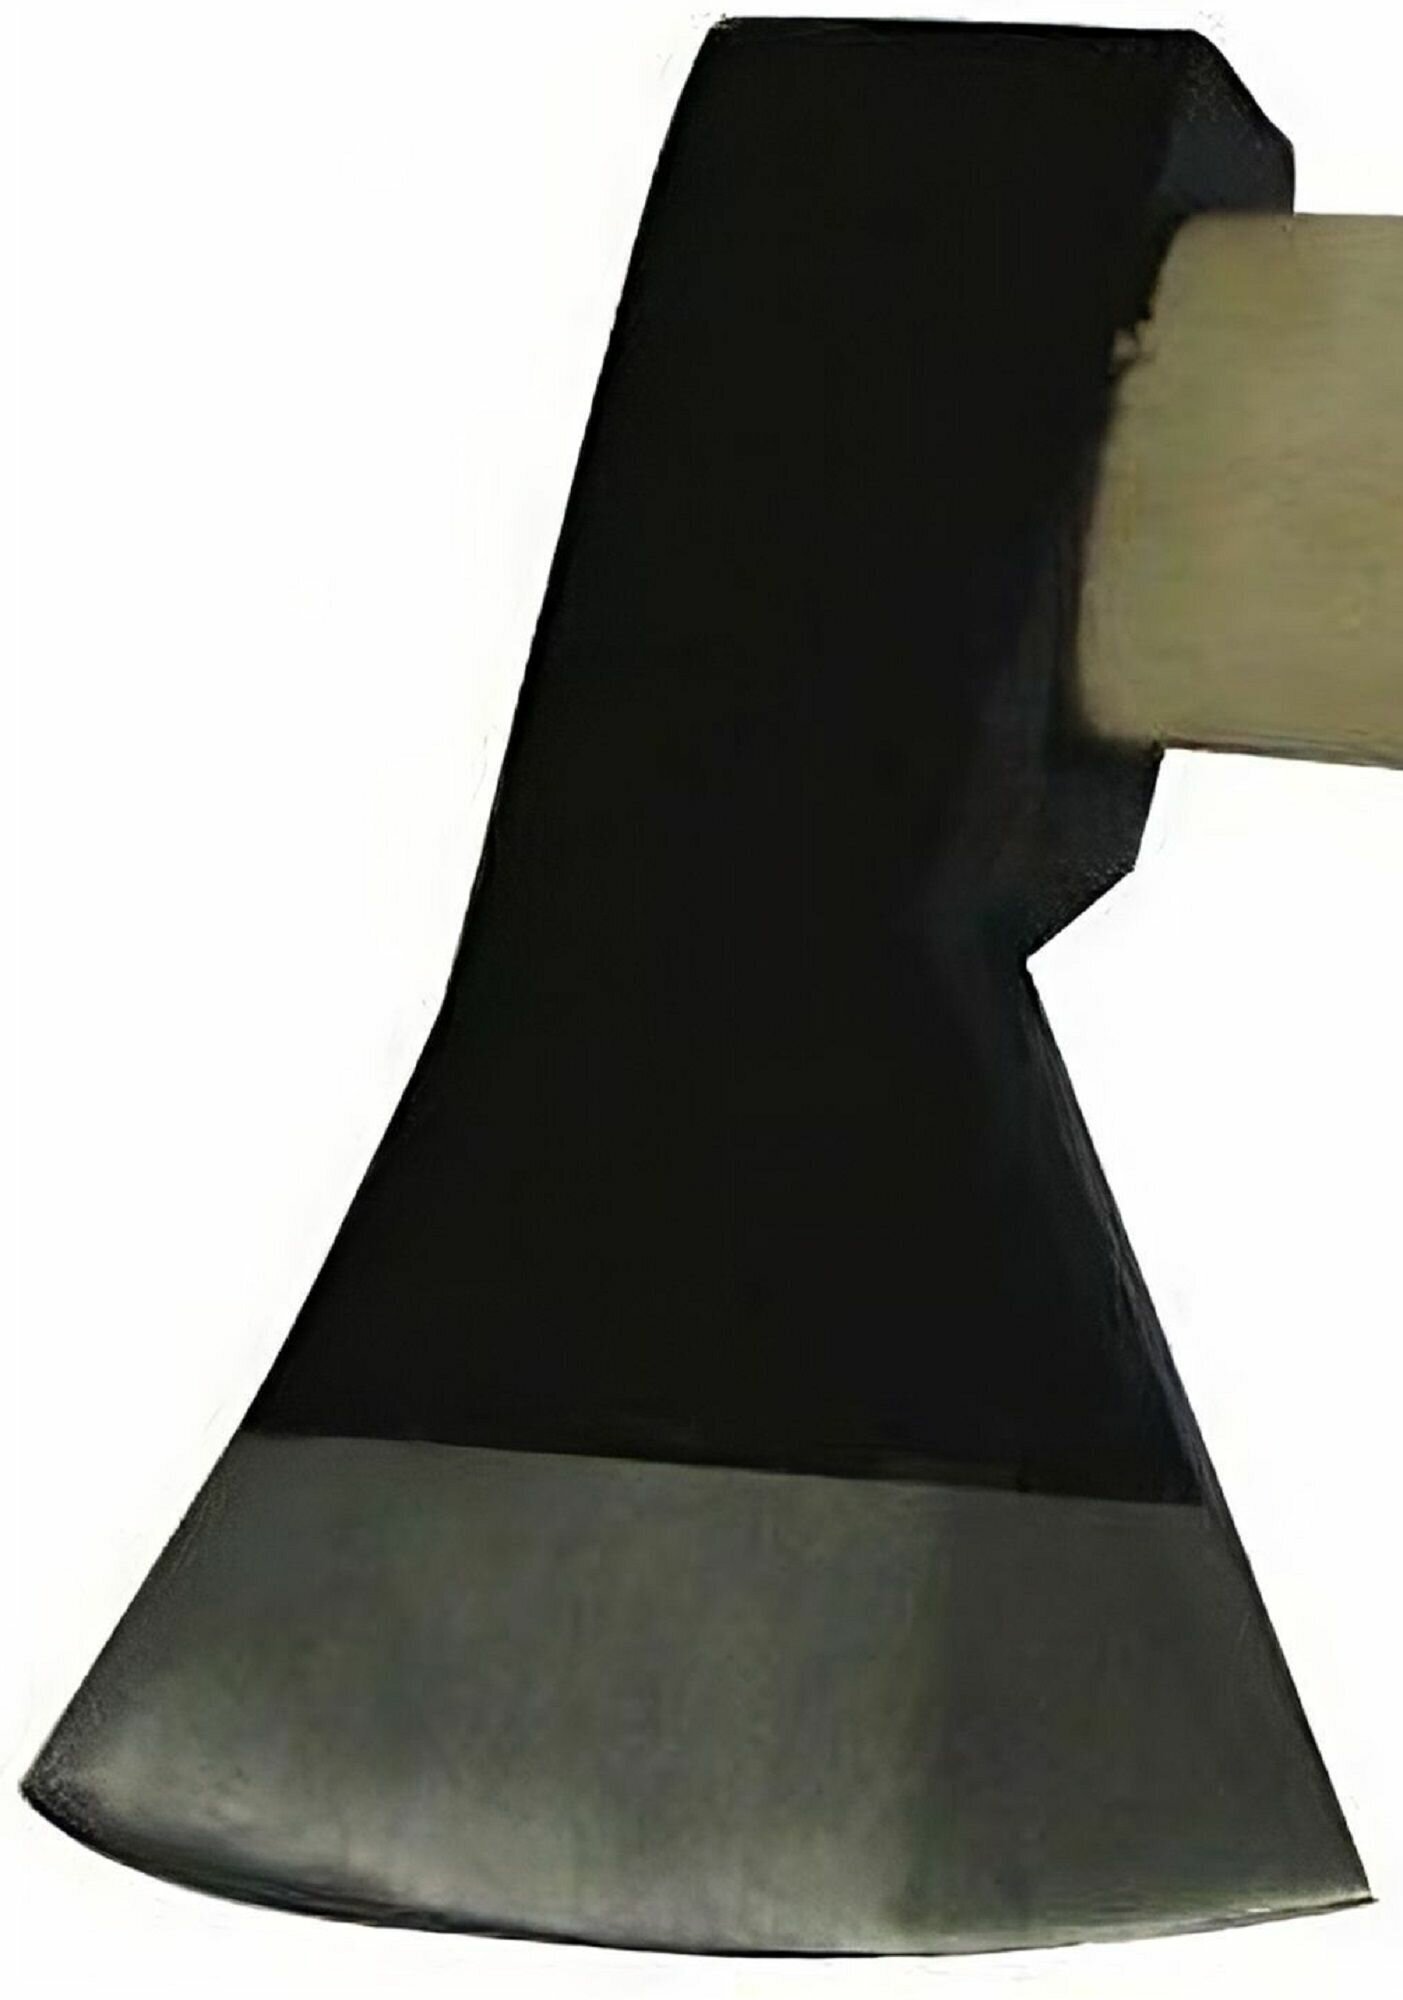 Топор "Стандарт" 1 кг, деревянная рукоятка. Инструмент для обработки всех видов дерева, столярных и плотницких работ, заготовки дров - фотография № 5